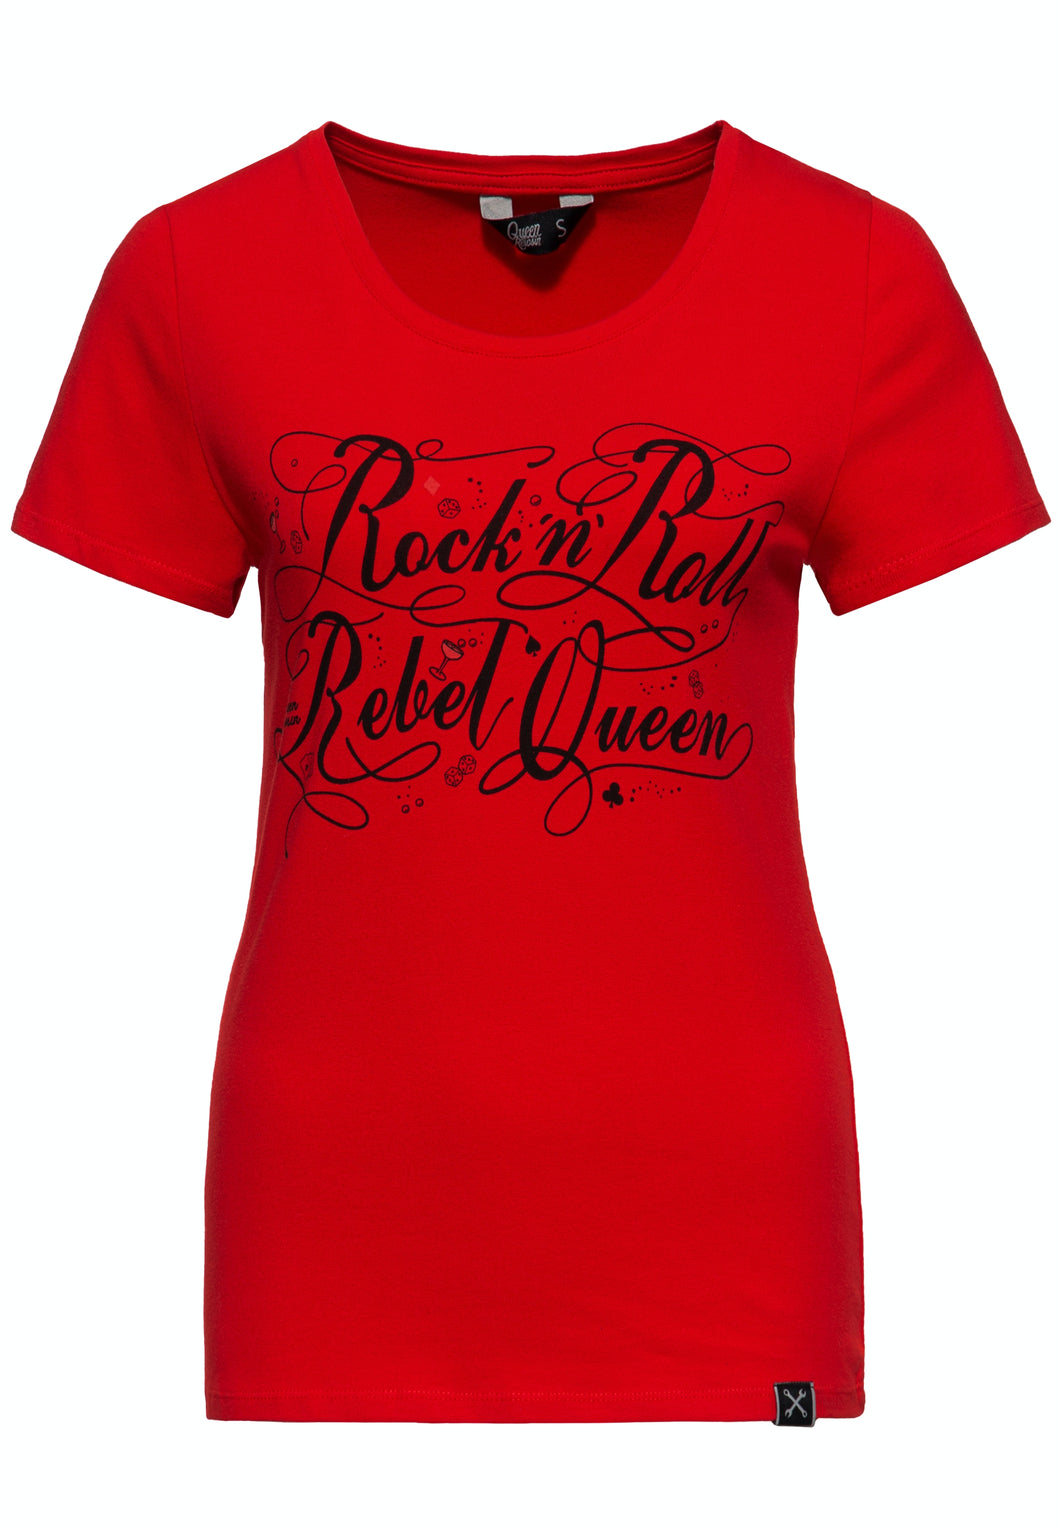 T-Shirt Rock'n Roll Queen, rot